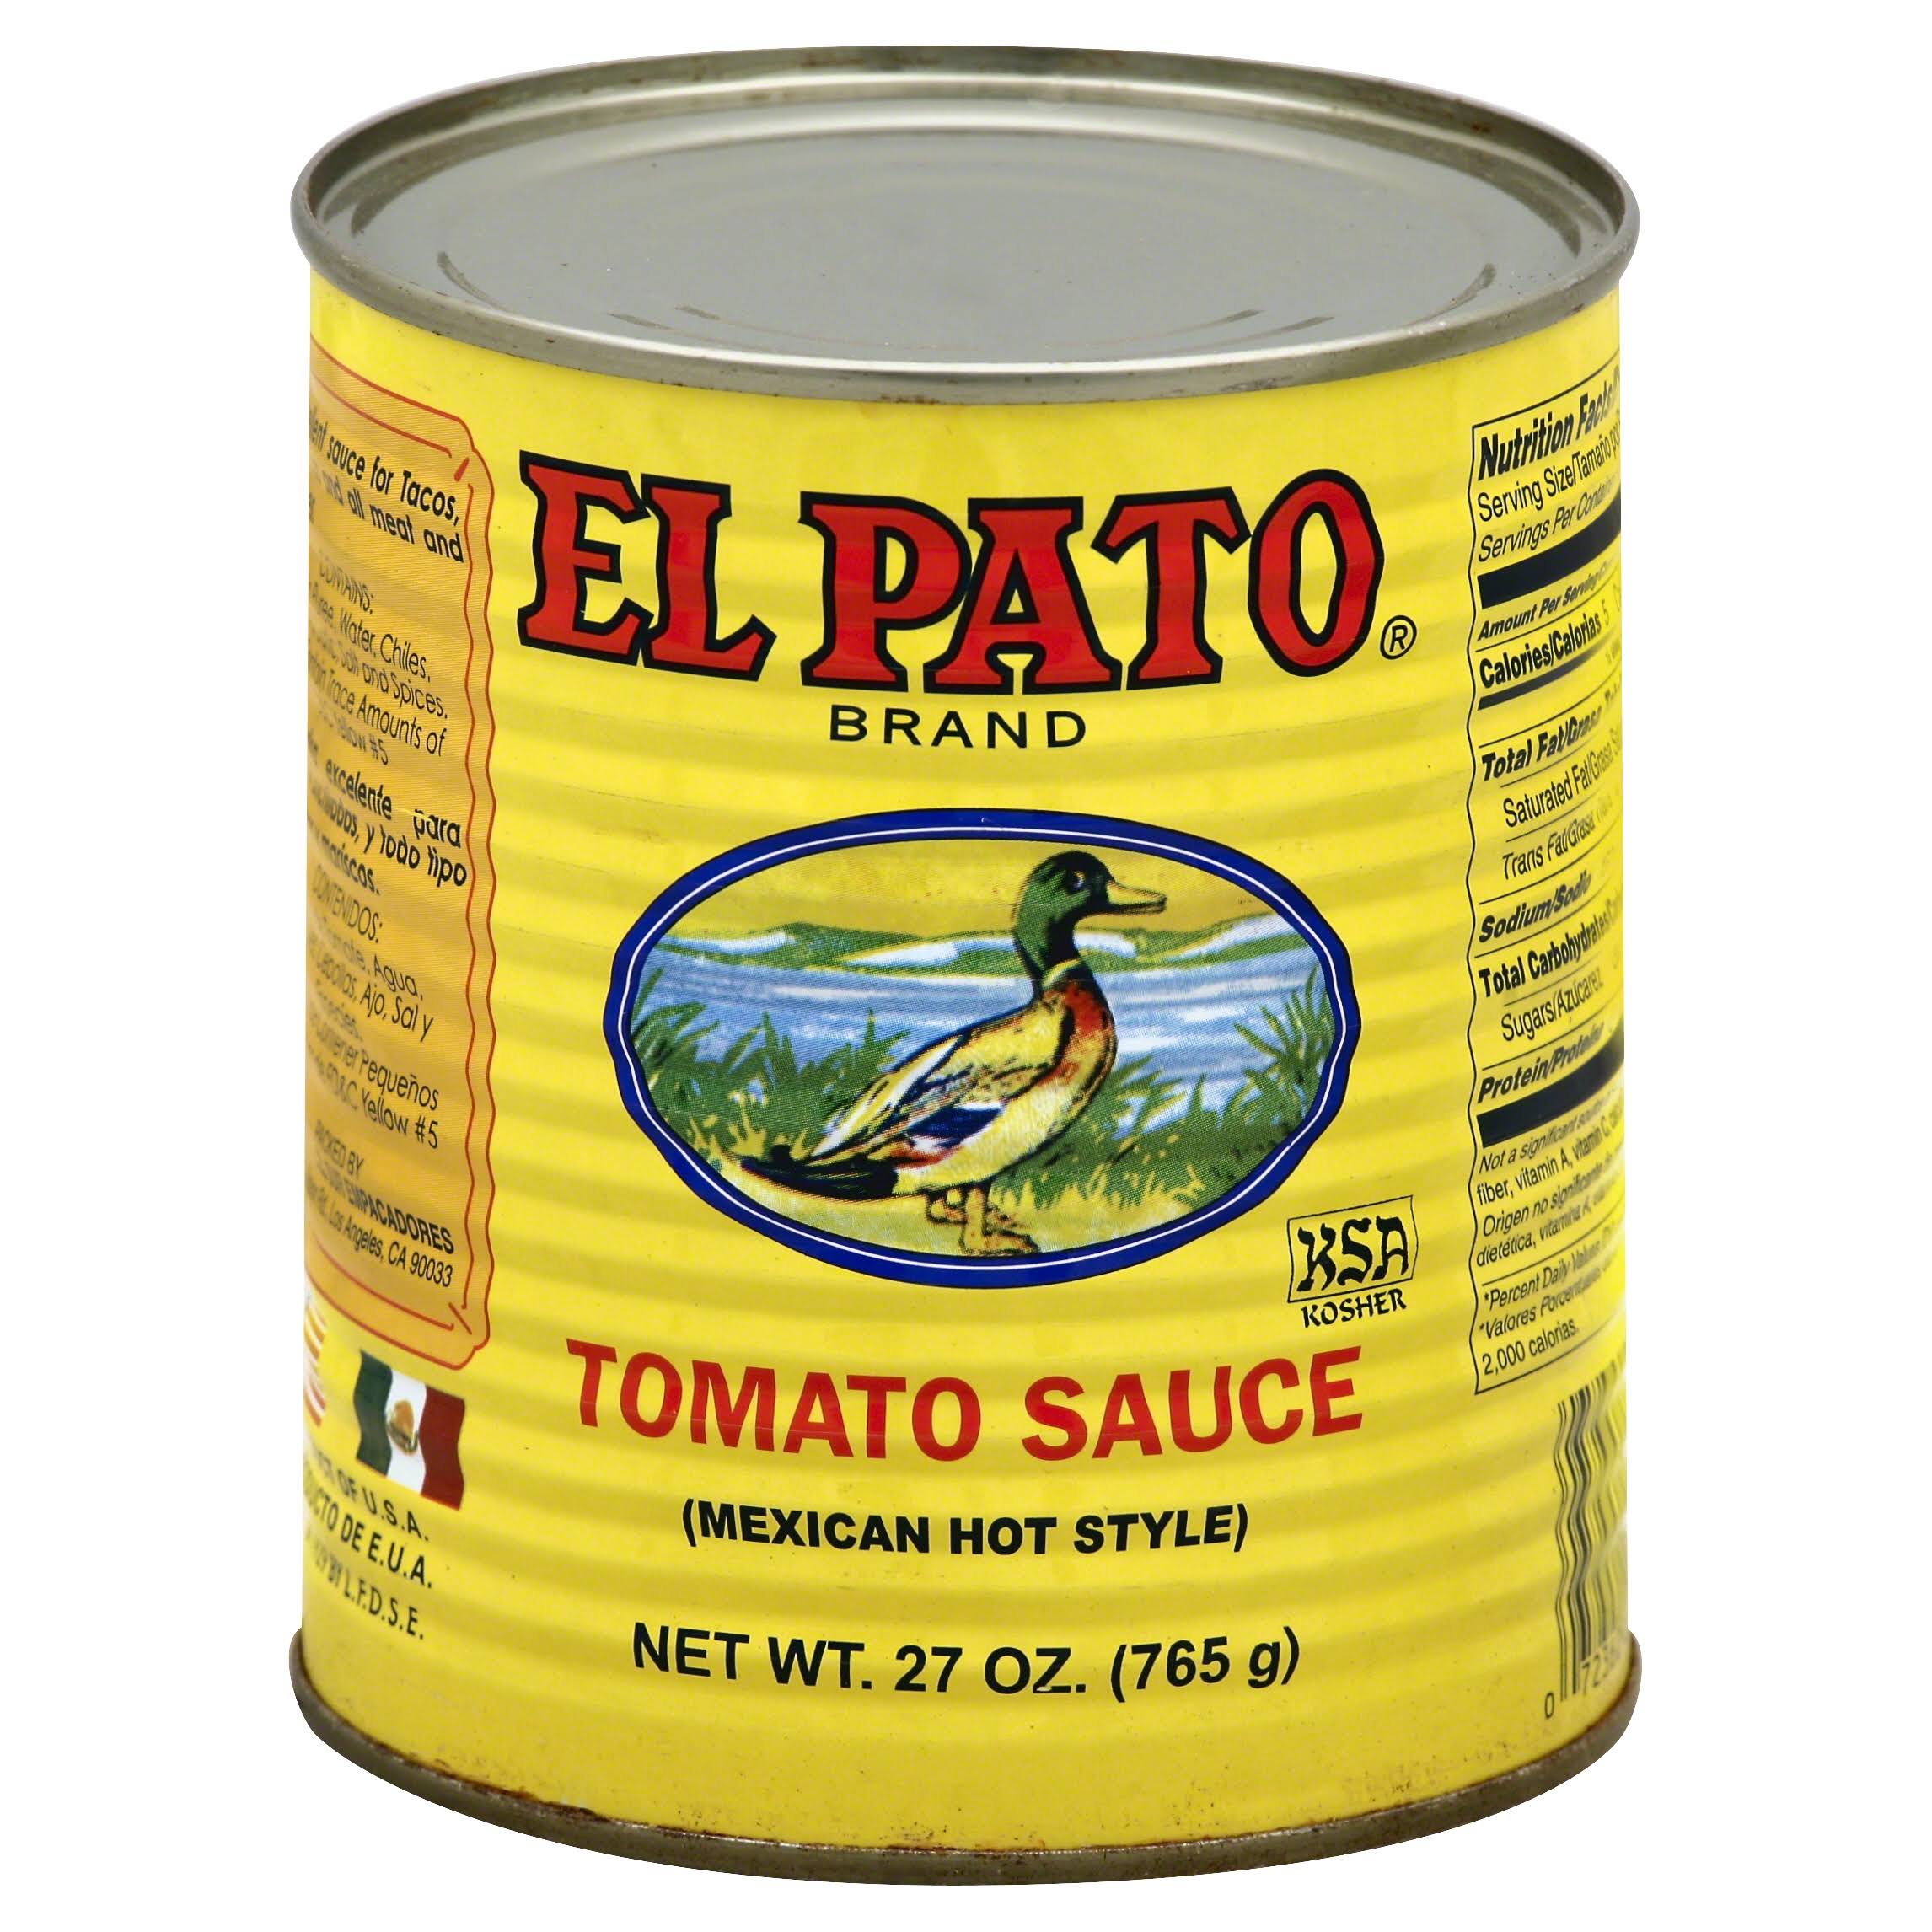 El Pato Tomato Sauce - 27oz, Mexican Hot Style